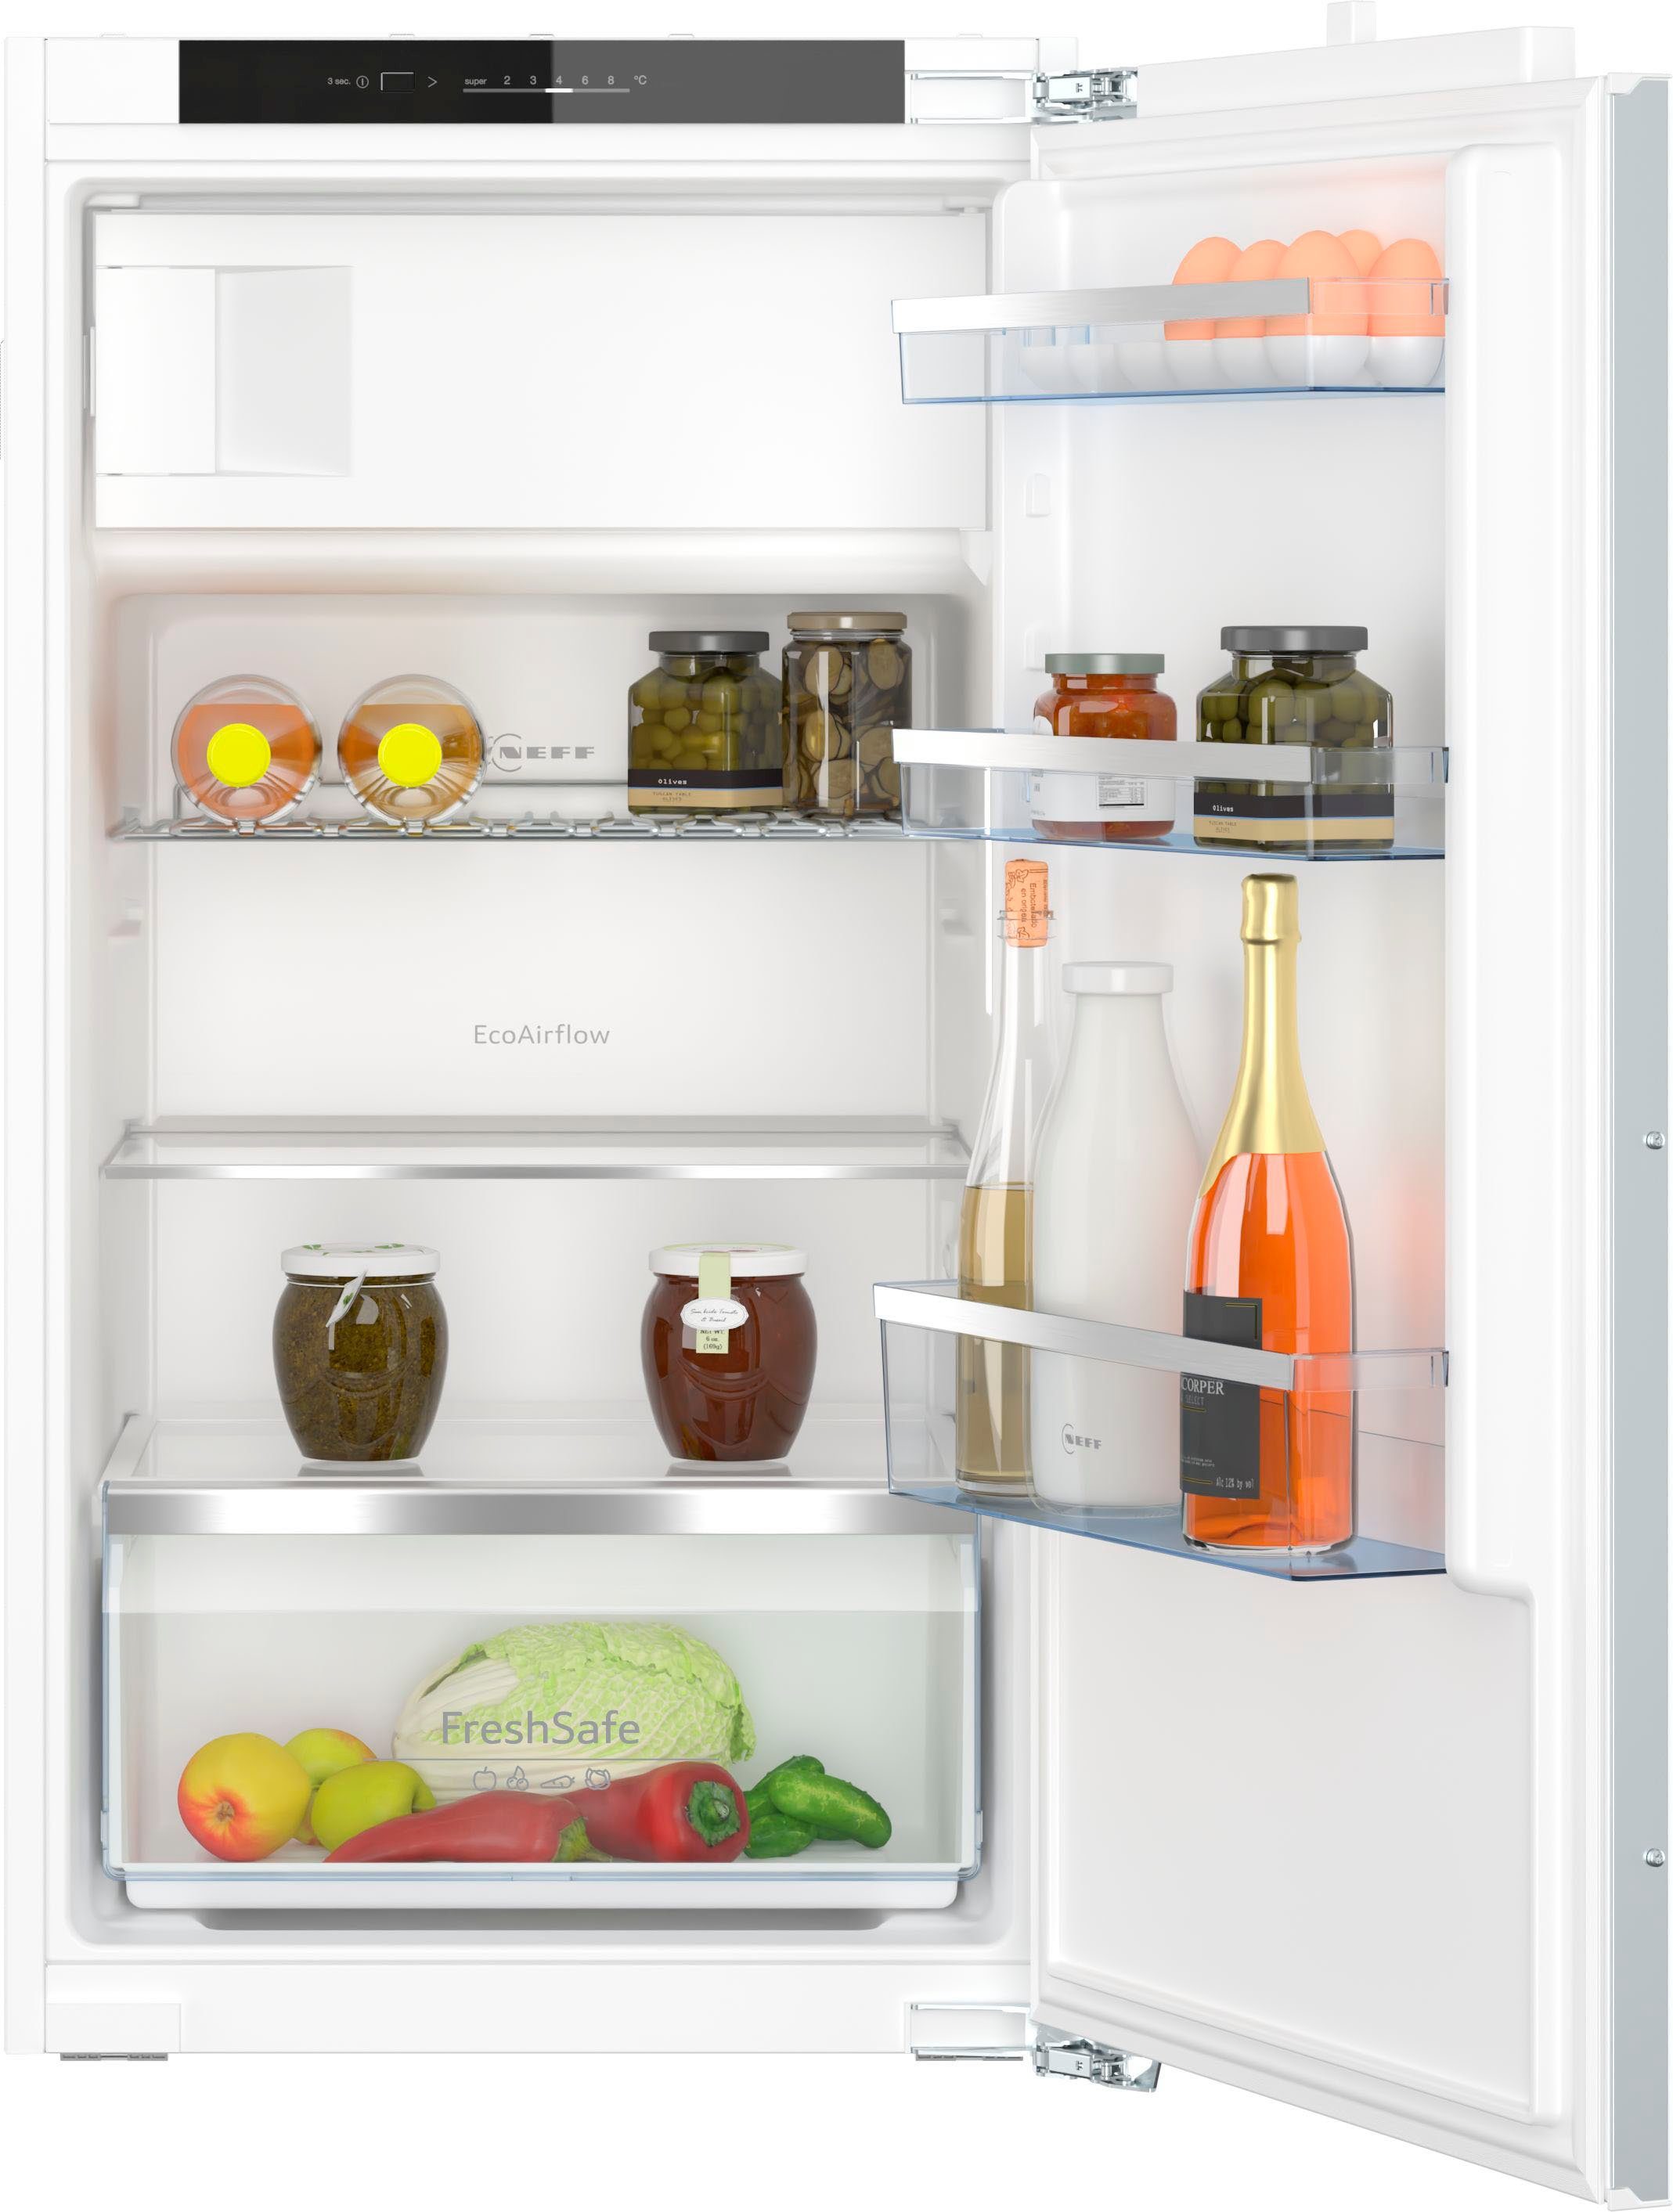 NEFF Einbaukühlschrank KI2322FE0, 102,1 cm hoch, 56 cm breit, Fresh Safe –  Schublade für flexible Lagermöglichkeiten von Obst und Gemüse | Kühlschränke